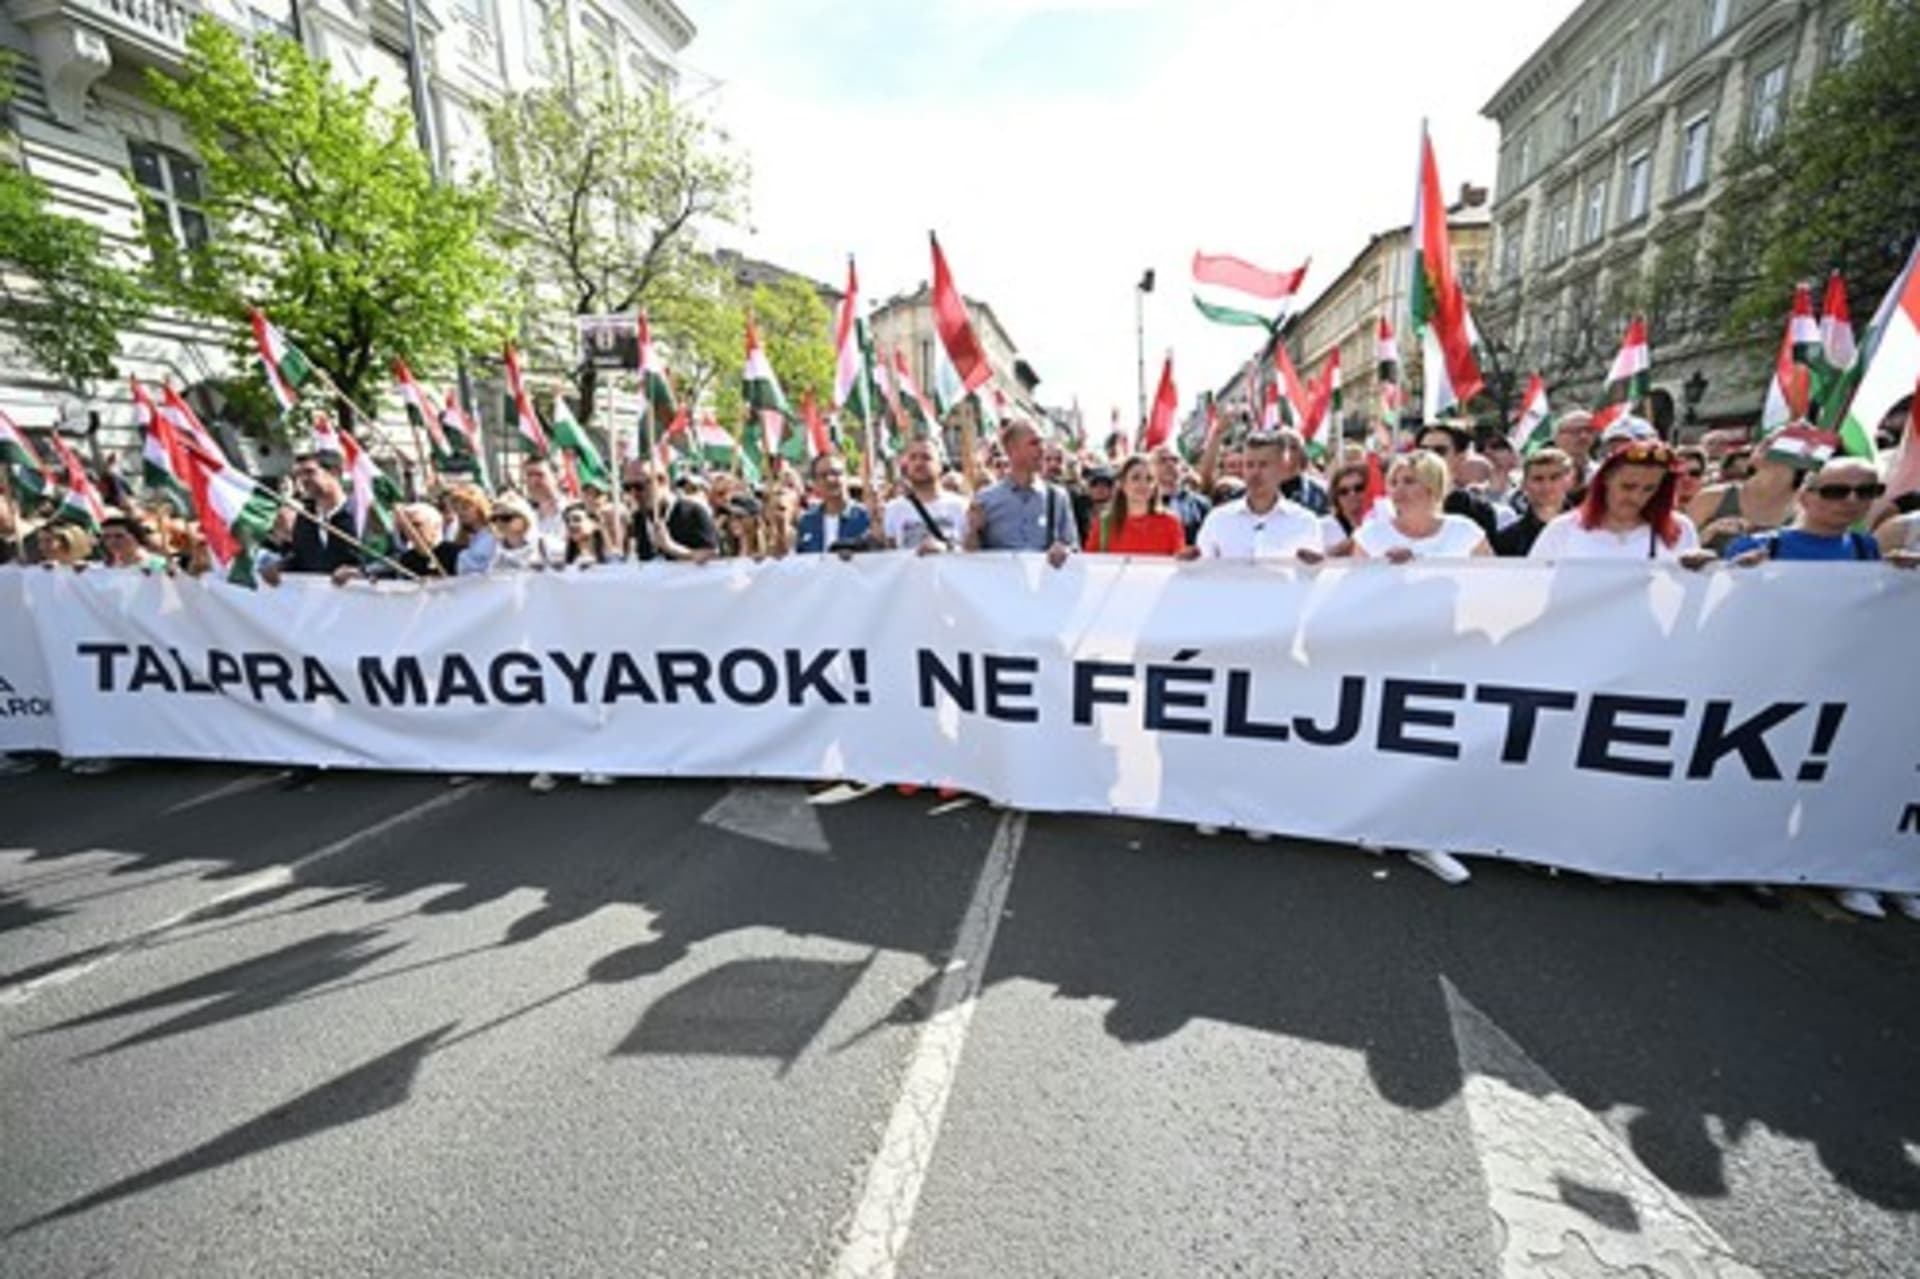 Na demonstraci proti Orbánovi se sešly desítky tisíc lidí.